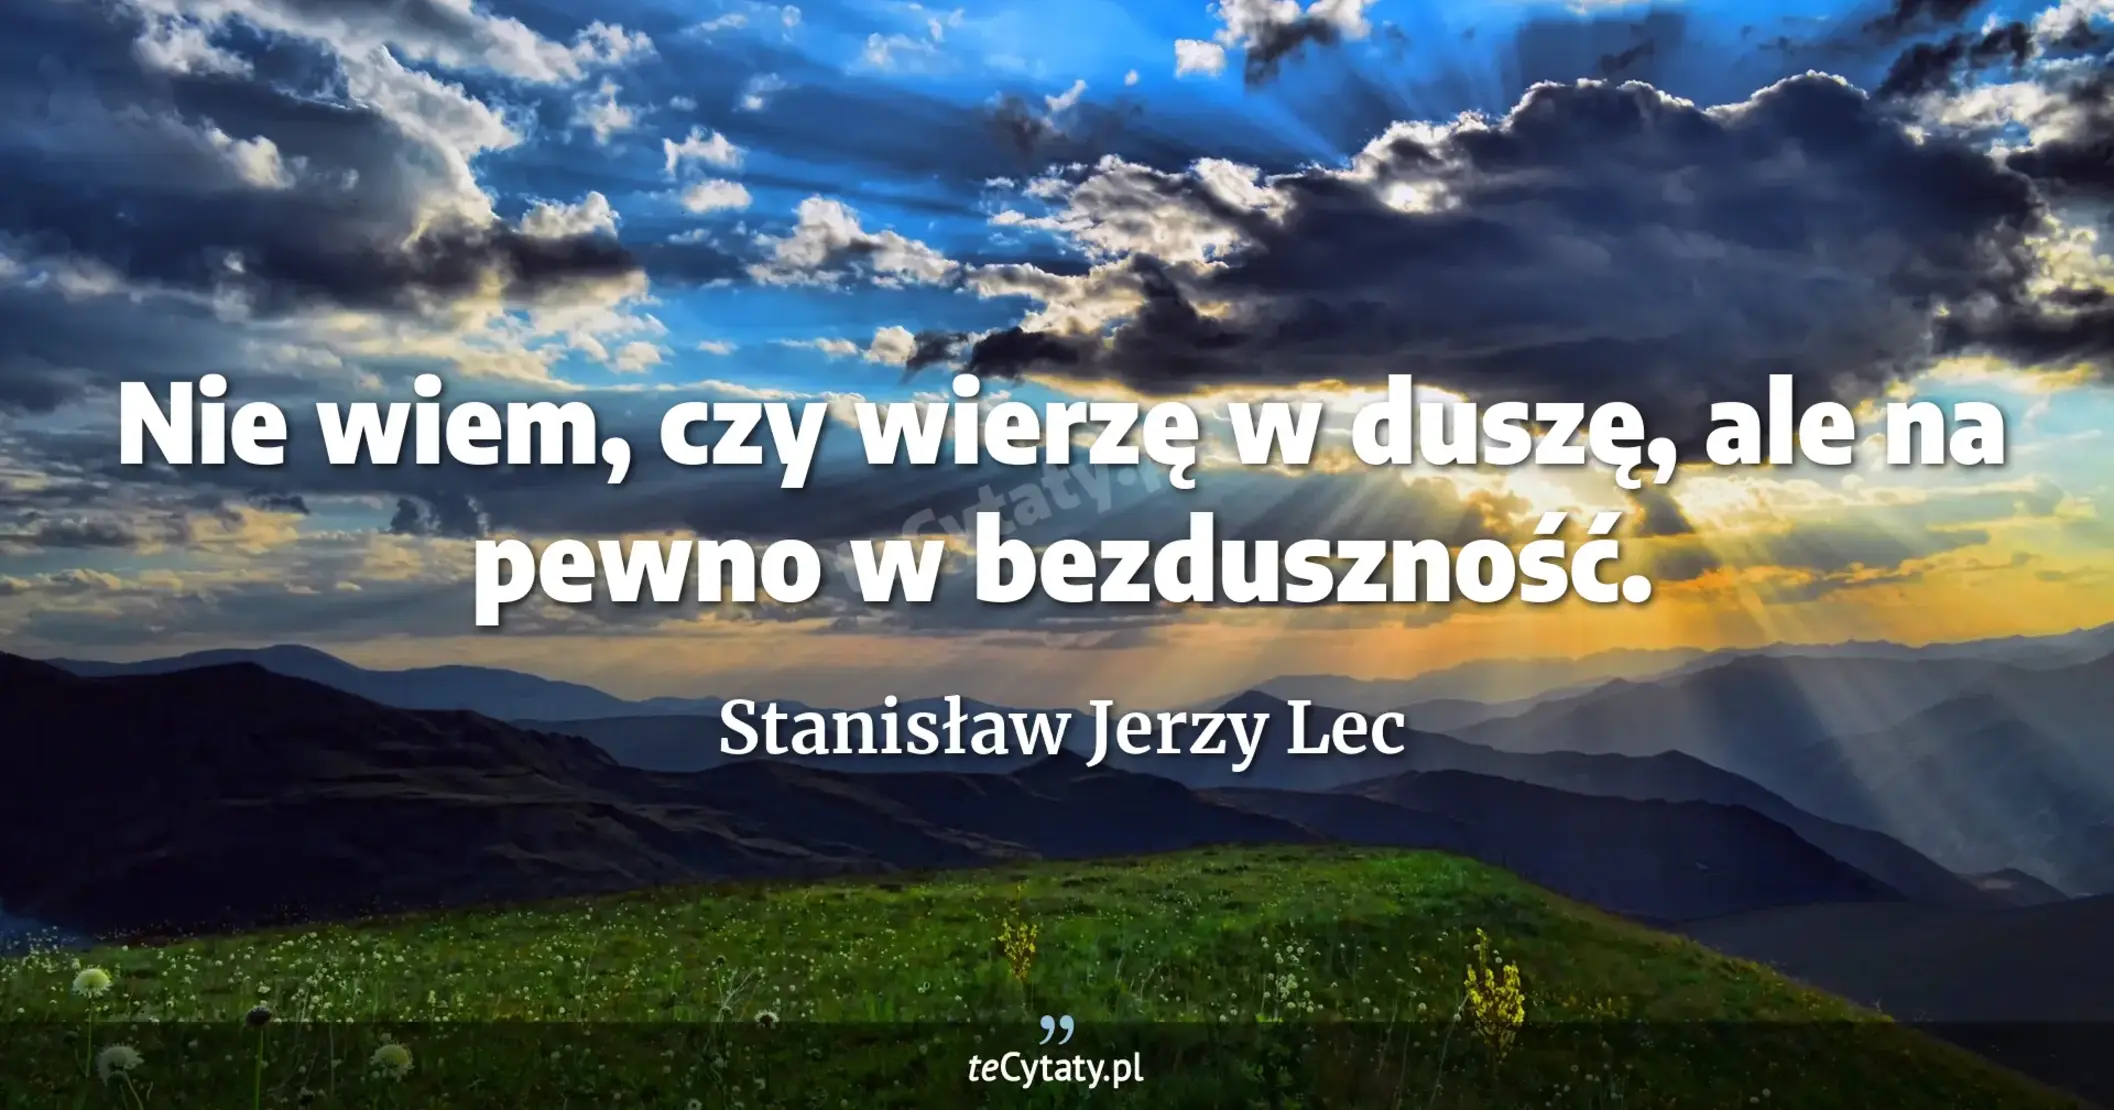 Nie wiem, czy wierzę w duszę, ale na pewno w bezduszność. - Stanisław Jerzy Lec